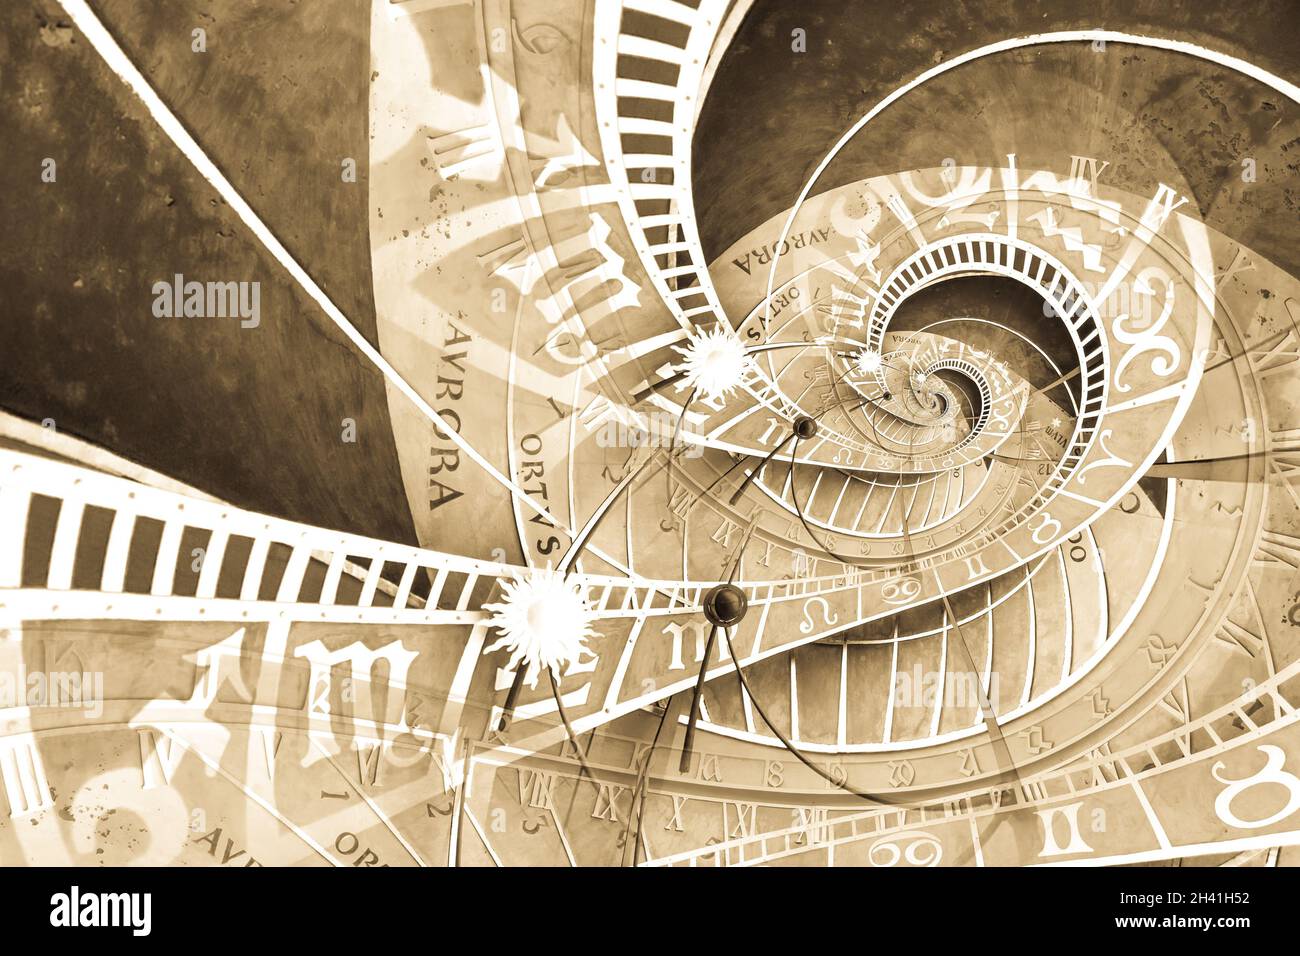 Efecto Droste fondo basado en el reloj astronómico de Praga. Diseño abstracto para conceptos relacionados con la astrología y la fantasía. Foto de stock